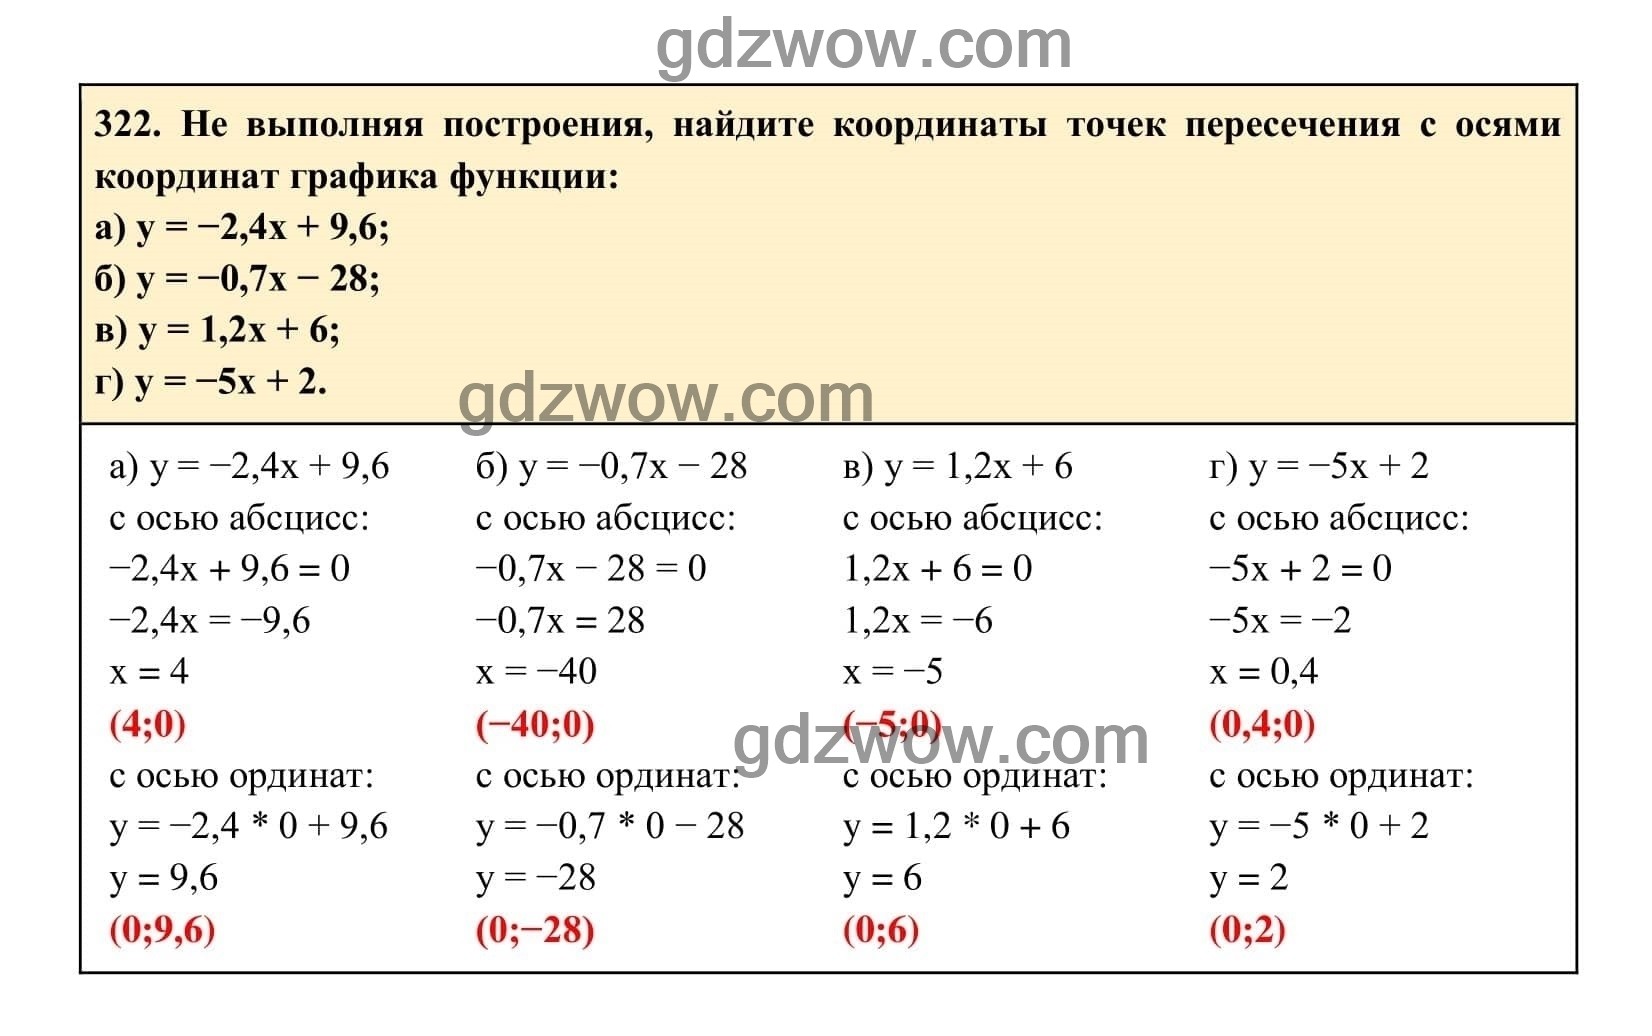 Упражнение 322 - ГДЗ по Алгебре 7 класс Учебник Макарычев (решебник) - GDZwow